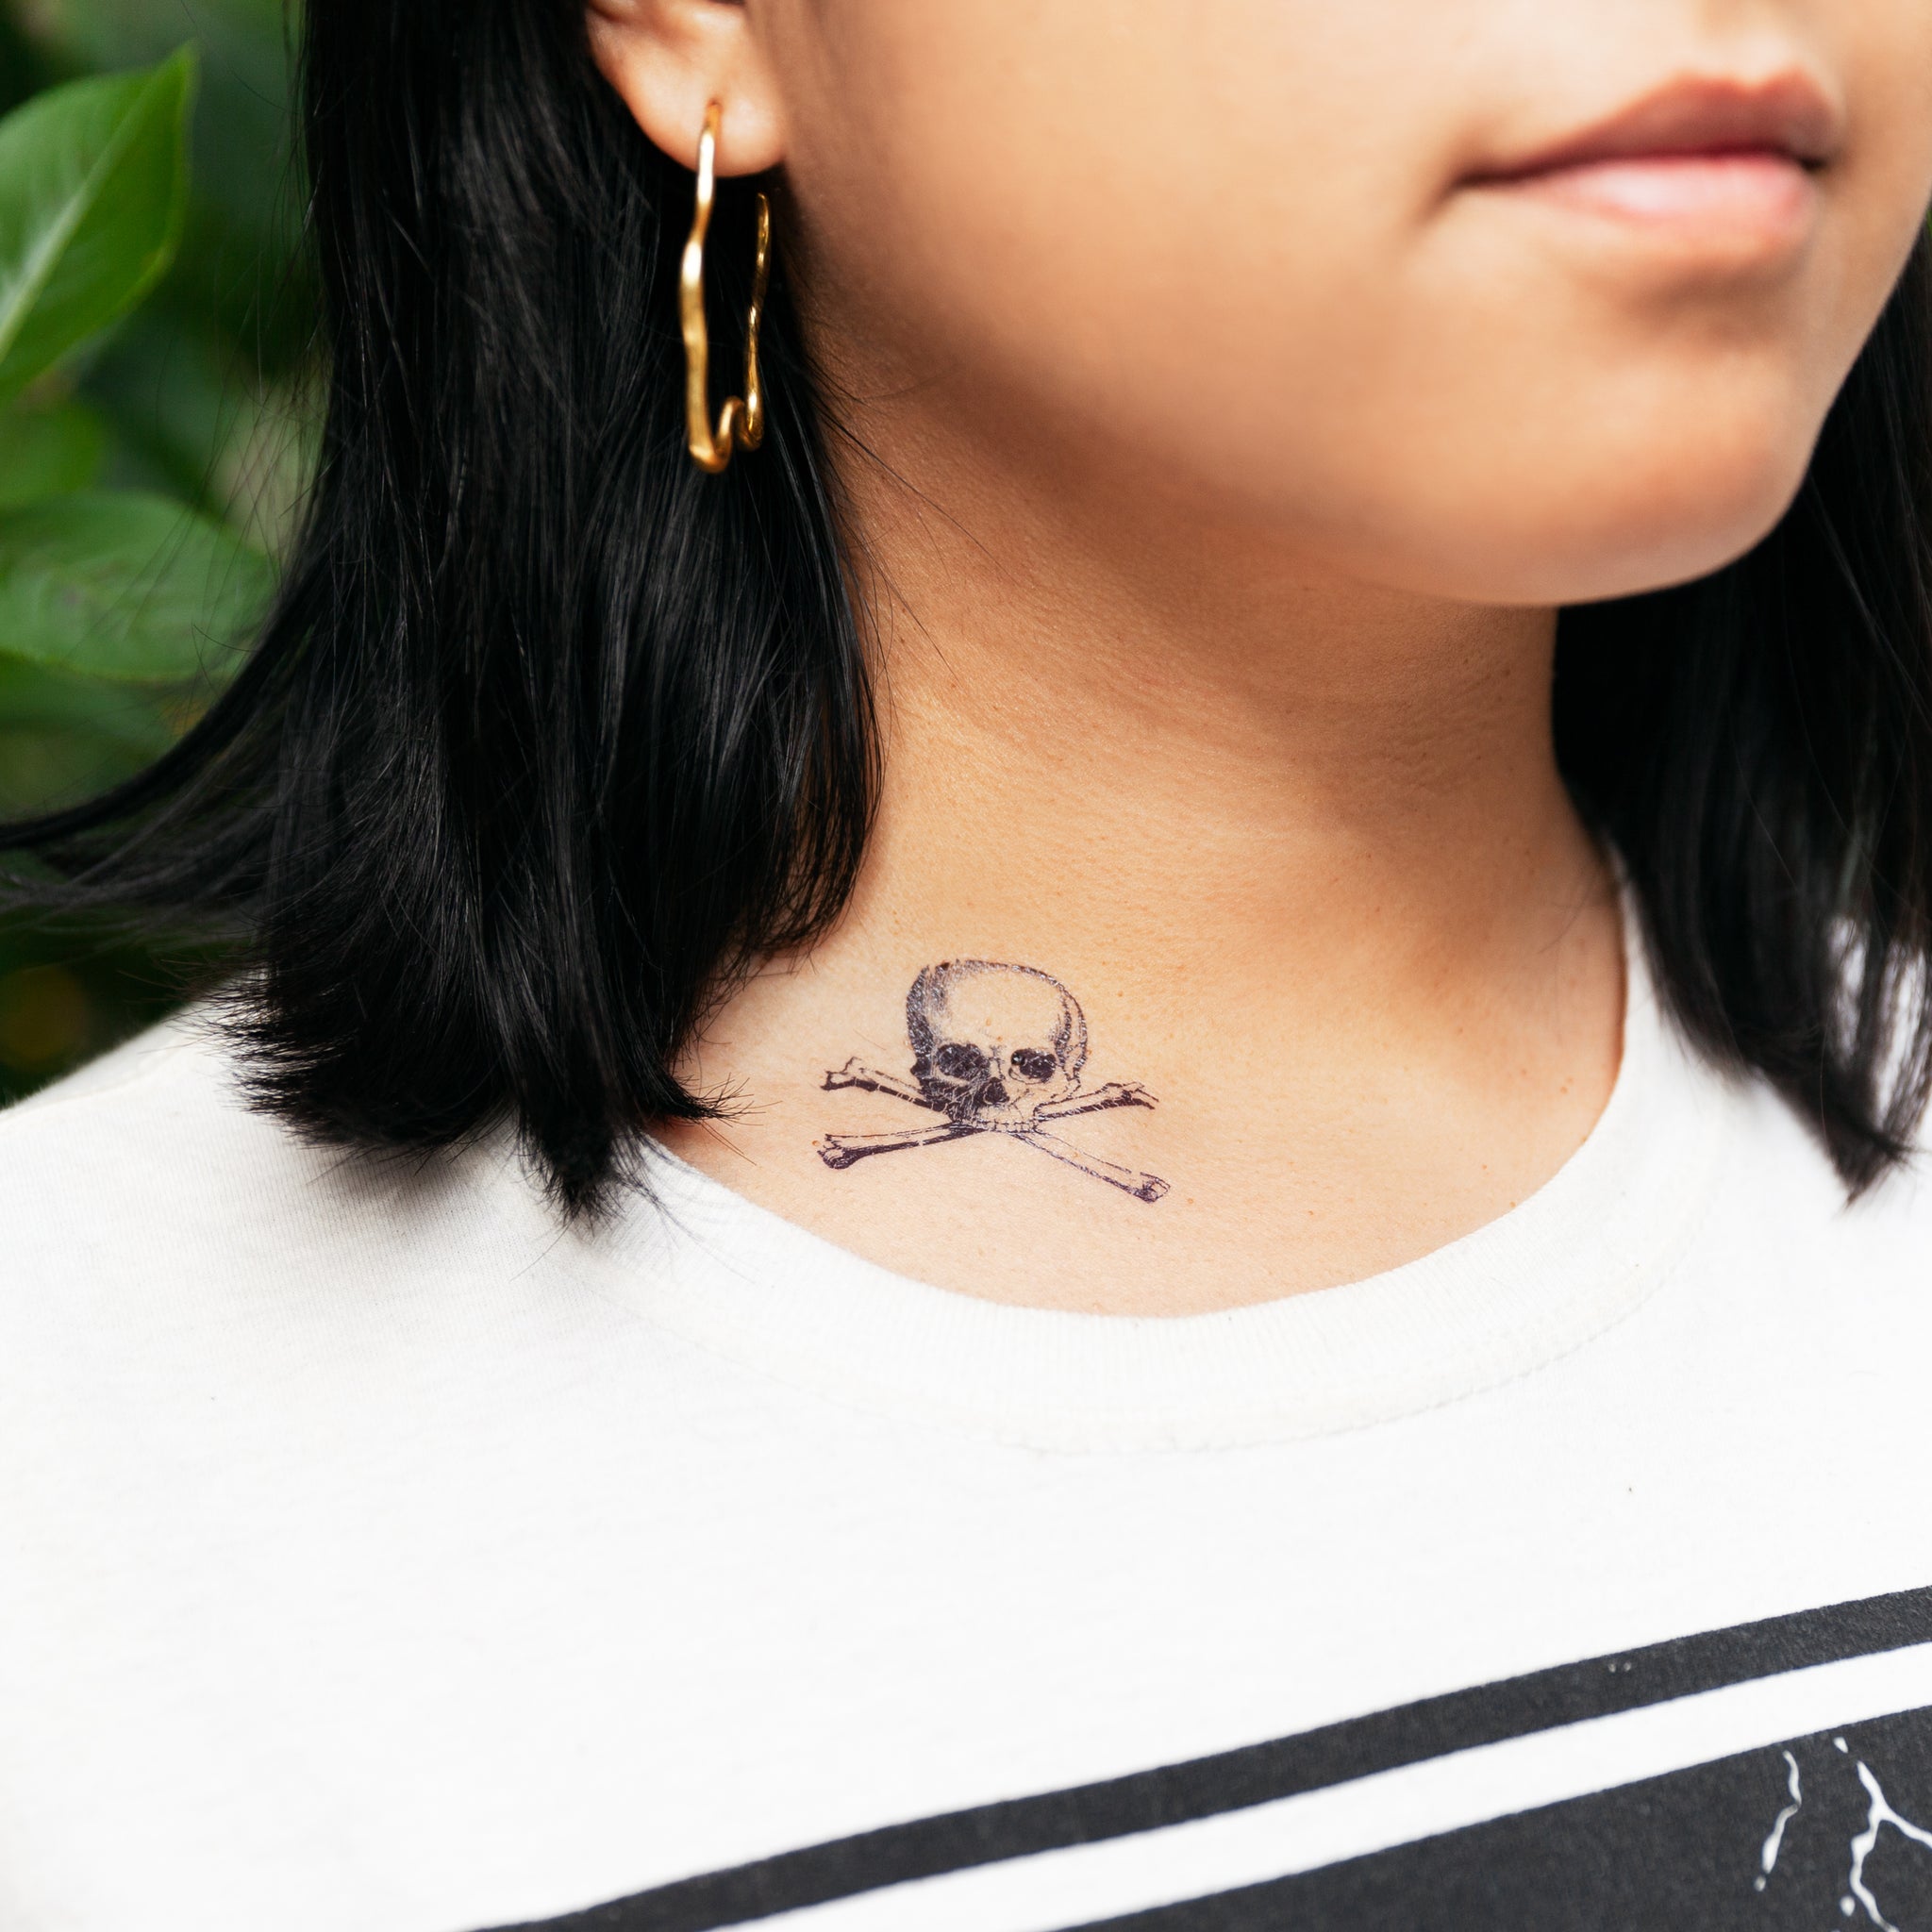 Vintage skull temporary tattoo | Skull tattoo, Tattoos, Tattoos for women